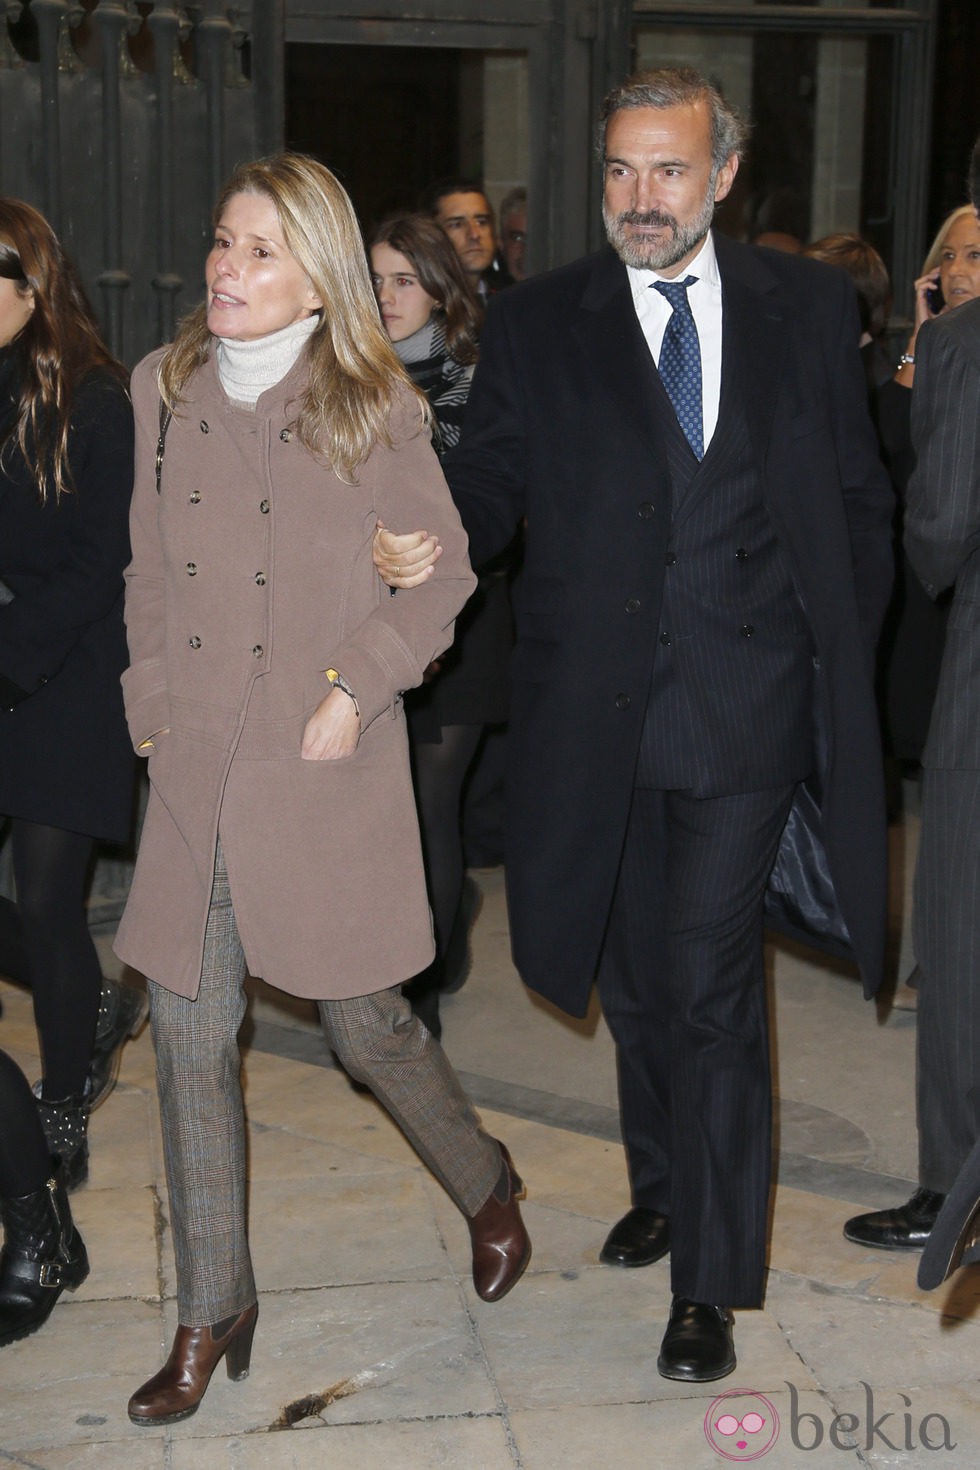 María Chávarri y Javier Fitz-James Stuart en el funeral de la Duquesa de Alba en Madrid